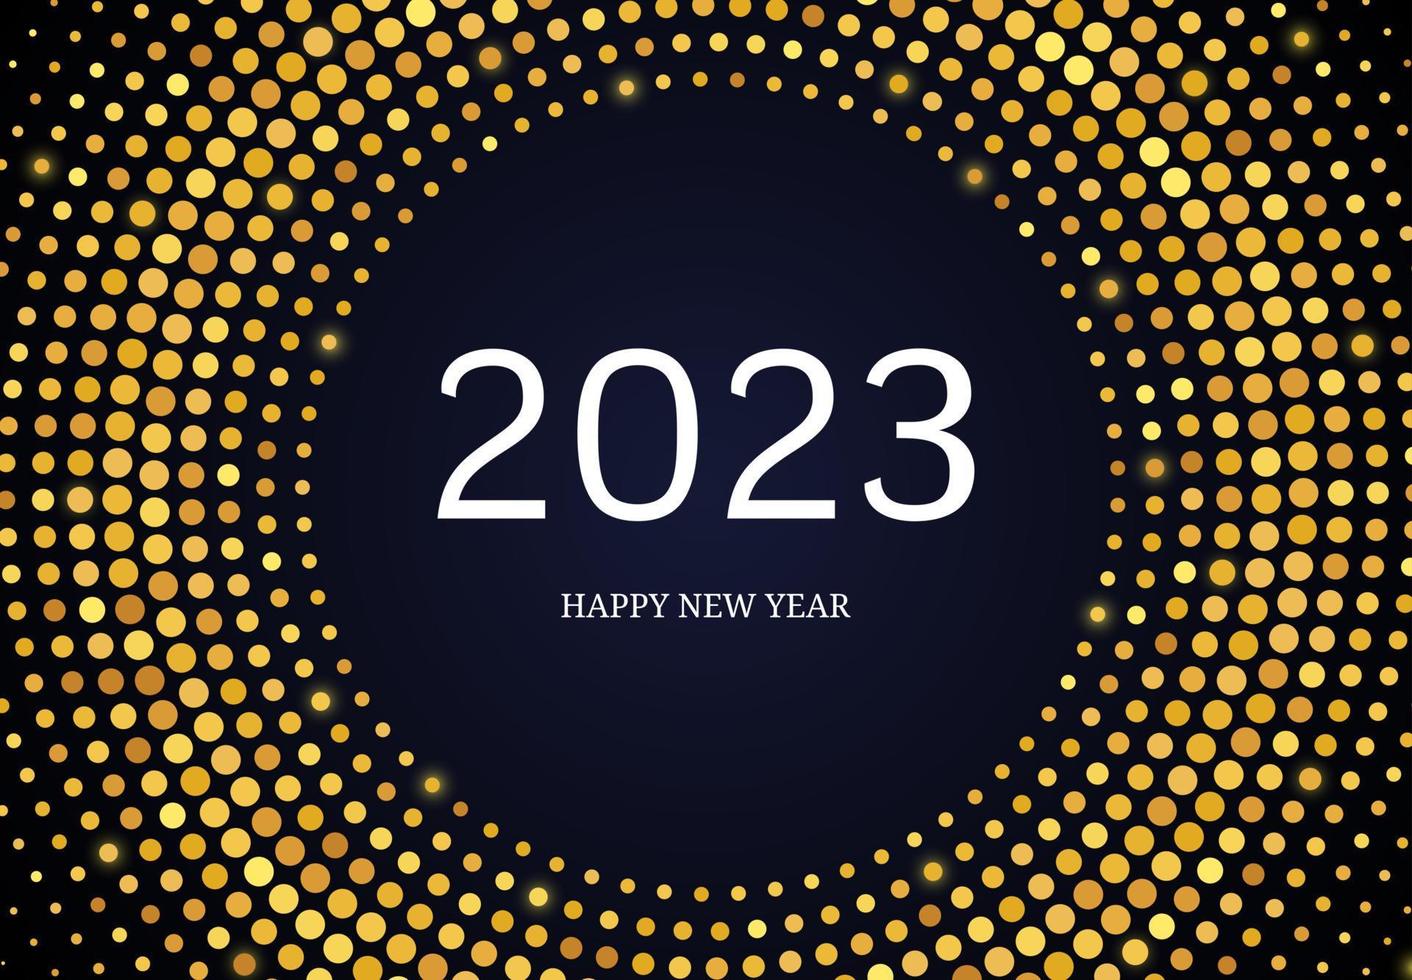 2023 feliz año nuevo de brillo dorado en forma de círculo. fondo punteado de semitono brillante de oro abstracto para la tarjeta de felicitación navideña sobre fondo oscuro. ilustración vectorial vector